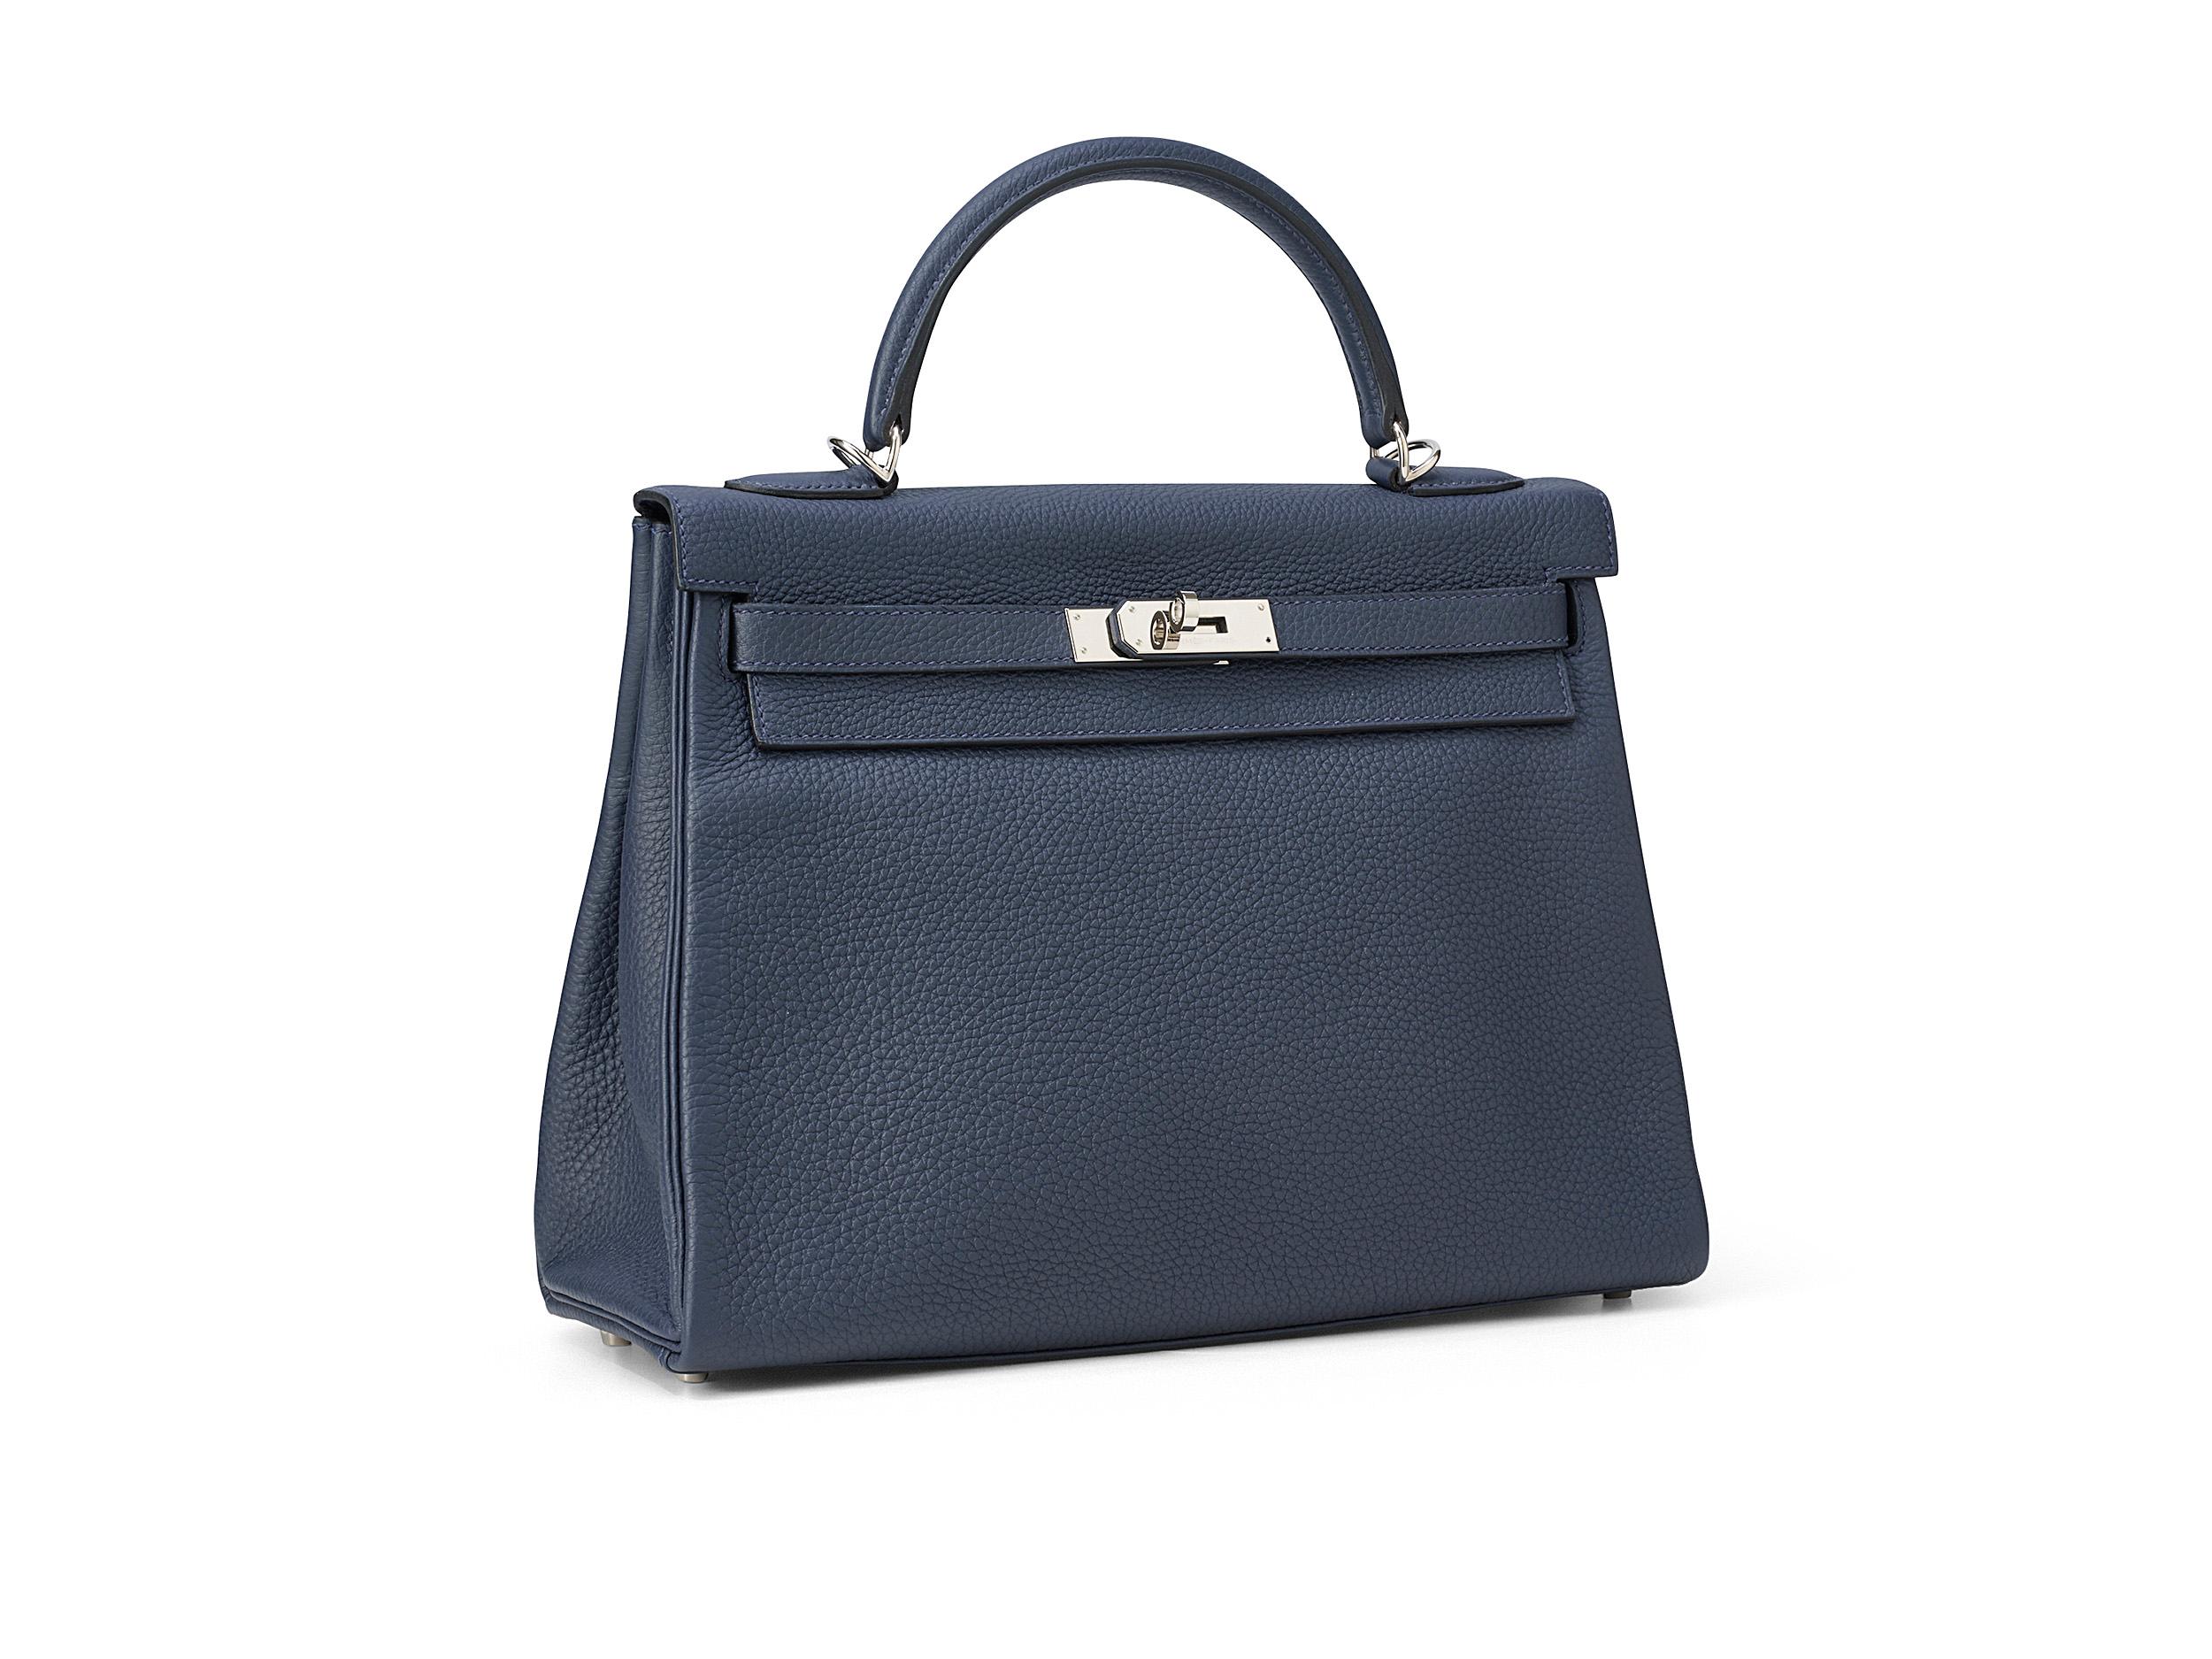 Hermès Kelly 32 en cuir bleu nuit et togo, avec des accessoires en palladium. Le sac est en excellent état avec des rayures mineures sur la quincaillerie et est livré en set complet incluant le reçu original.

Timbre Y (2020) 

